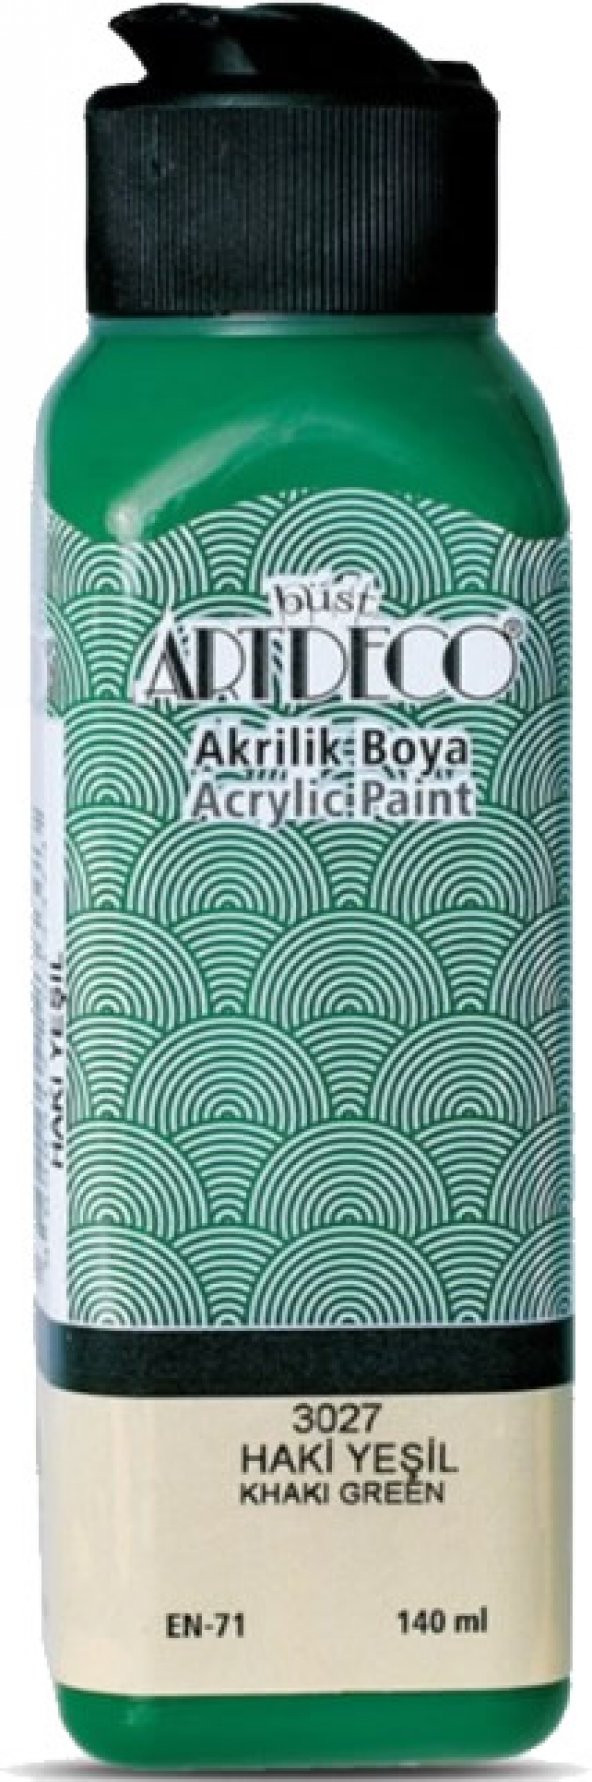 Artdeco 3027 140 ml Haki Yeşili Akrilik Boya